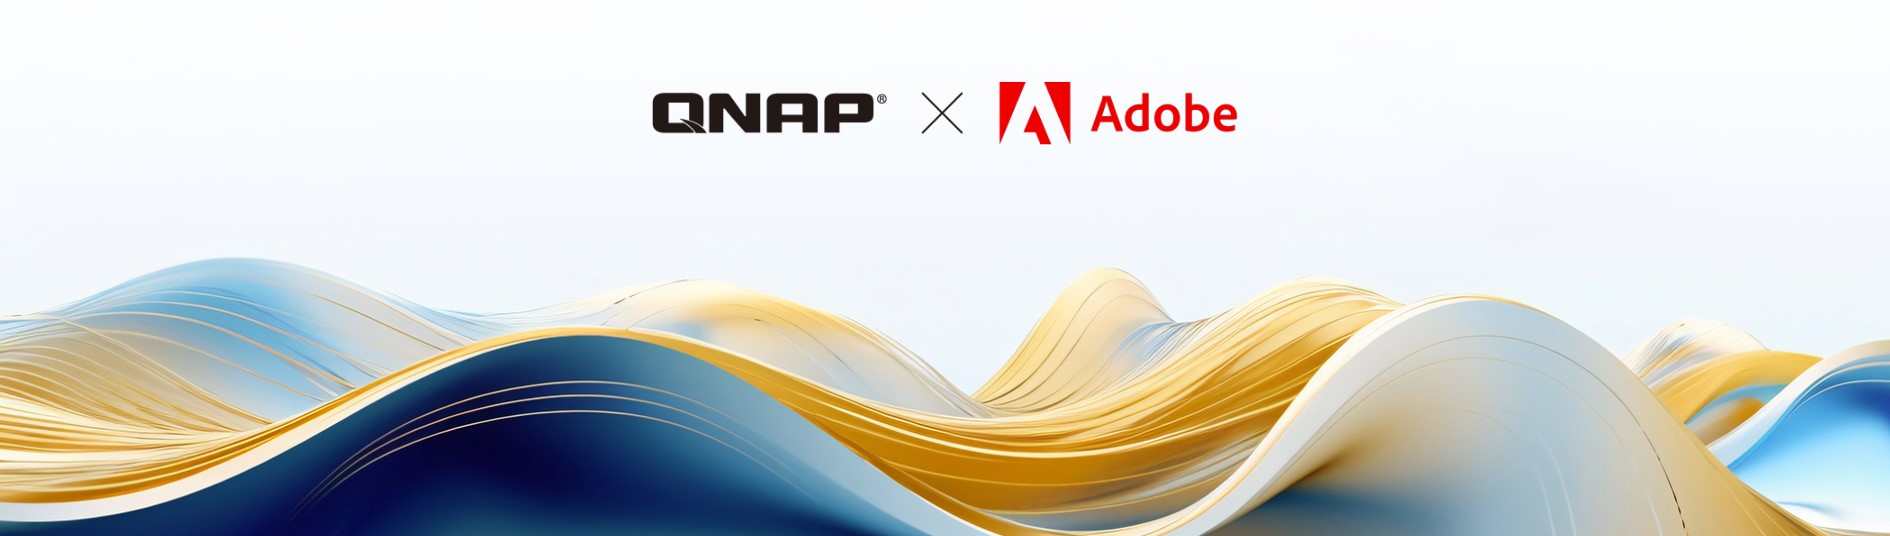 Firma QNAP to oficjalny partner Adobe w zakresie rozwiązań wideo i audio